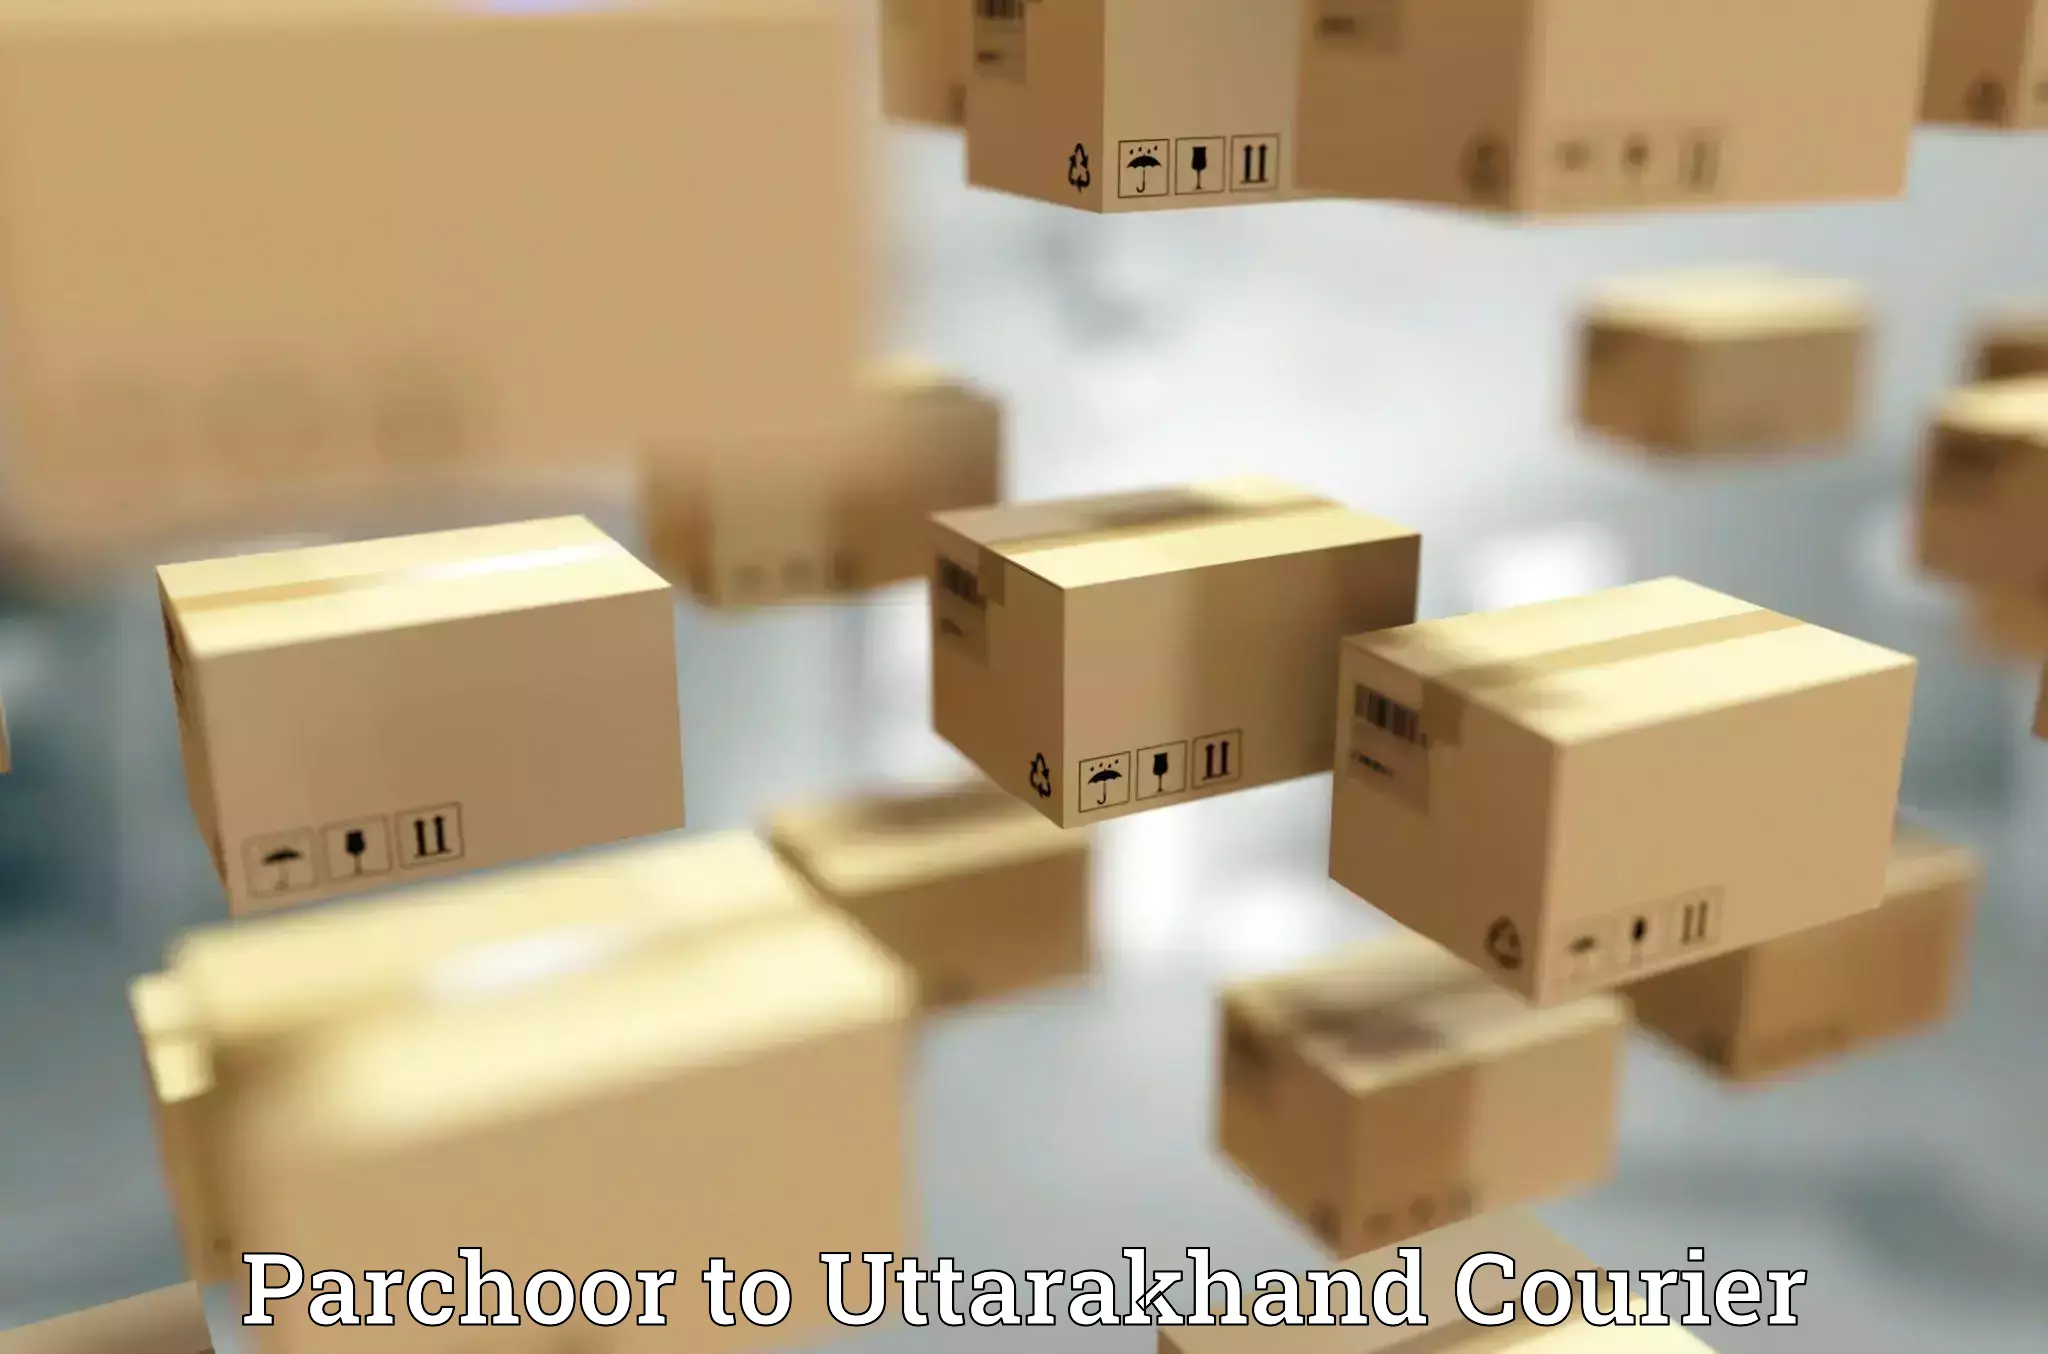 Courier service booking Parchoor to IIT Roorkee